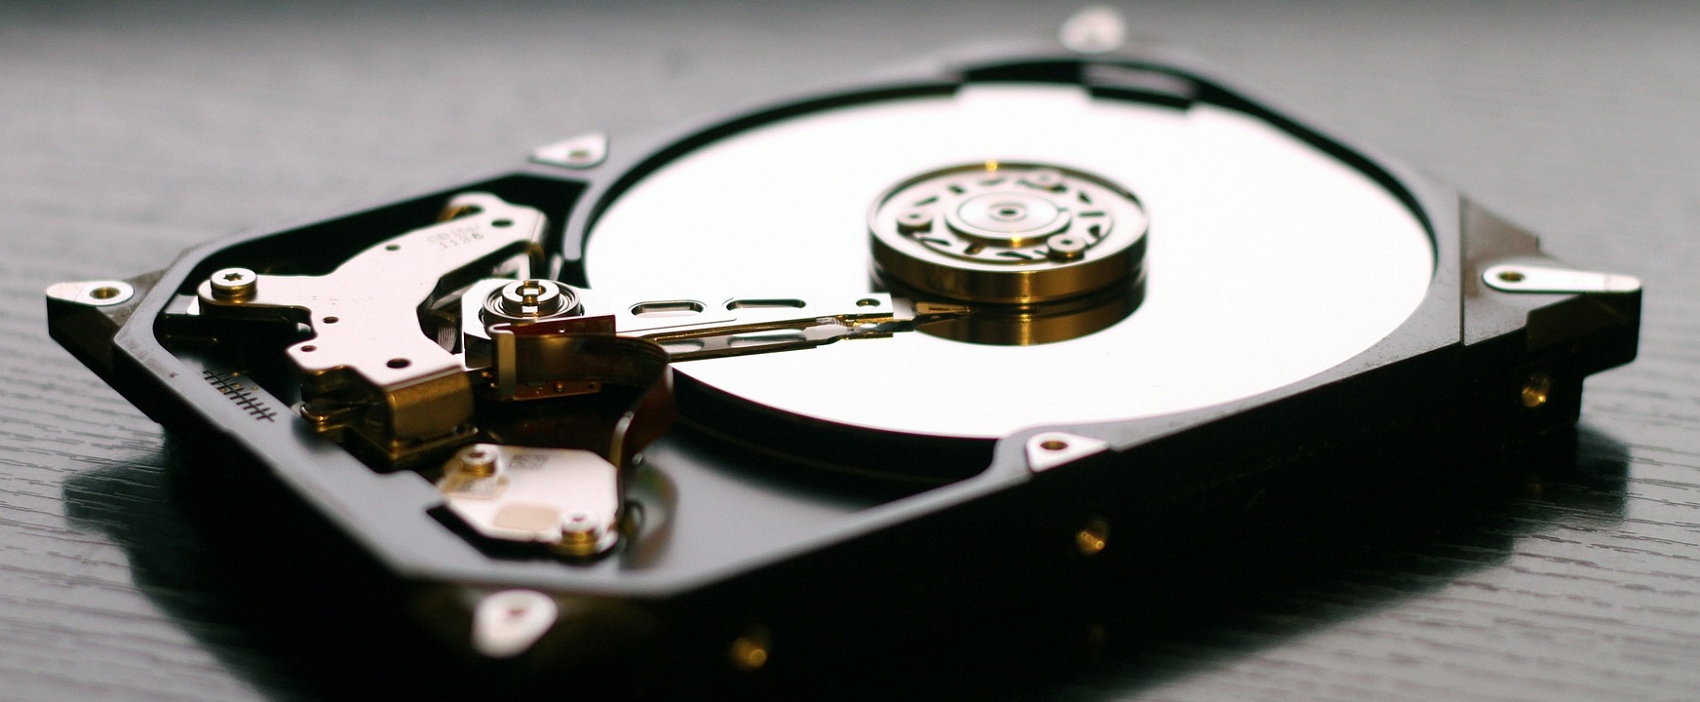 On peut partitionner des périphériques de stockage comme les disques HDD, les disques SSD et les clés USB. © Pixabay.com